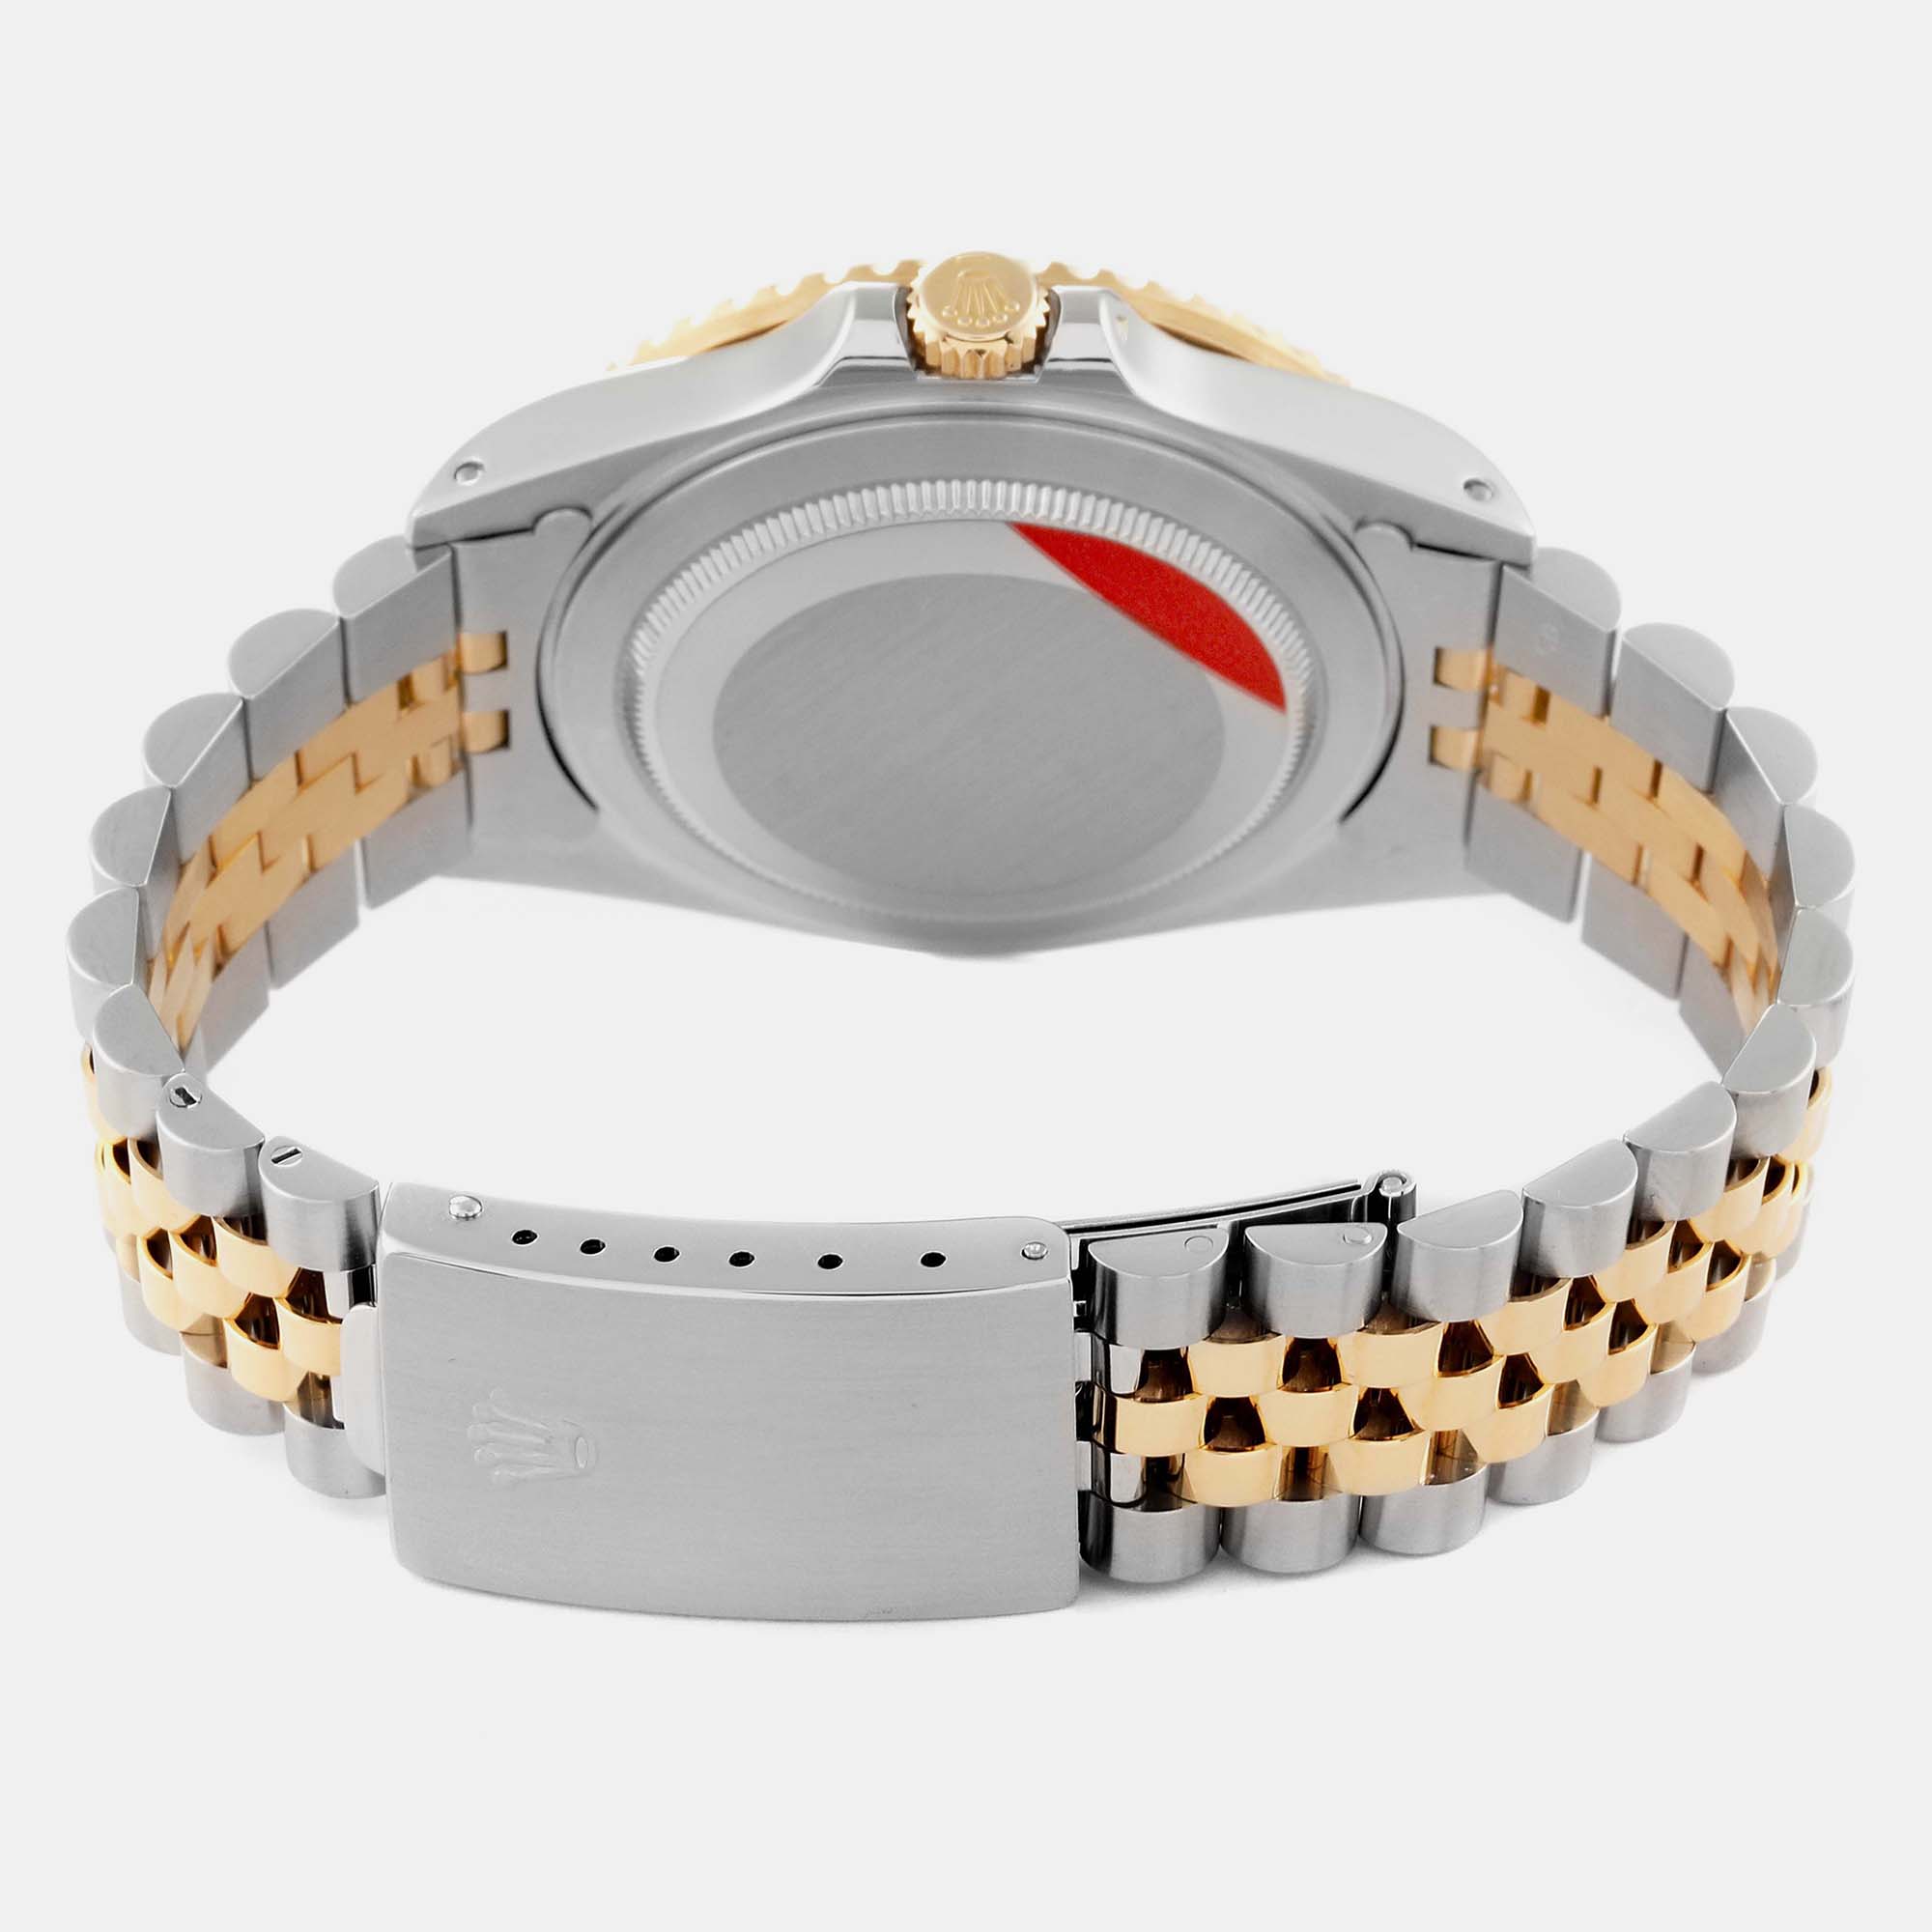 Rolex GMT Master II Yellow Gold Steel Jubilee Bracelet Men's Watch 16713 40 Mm